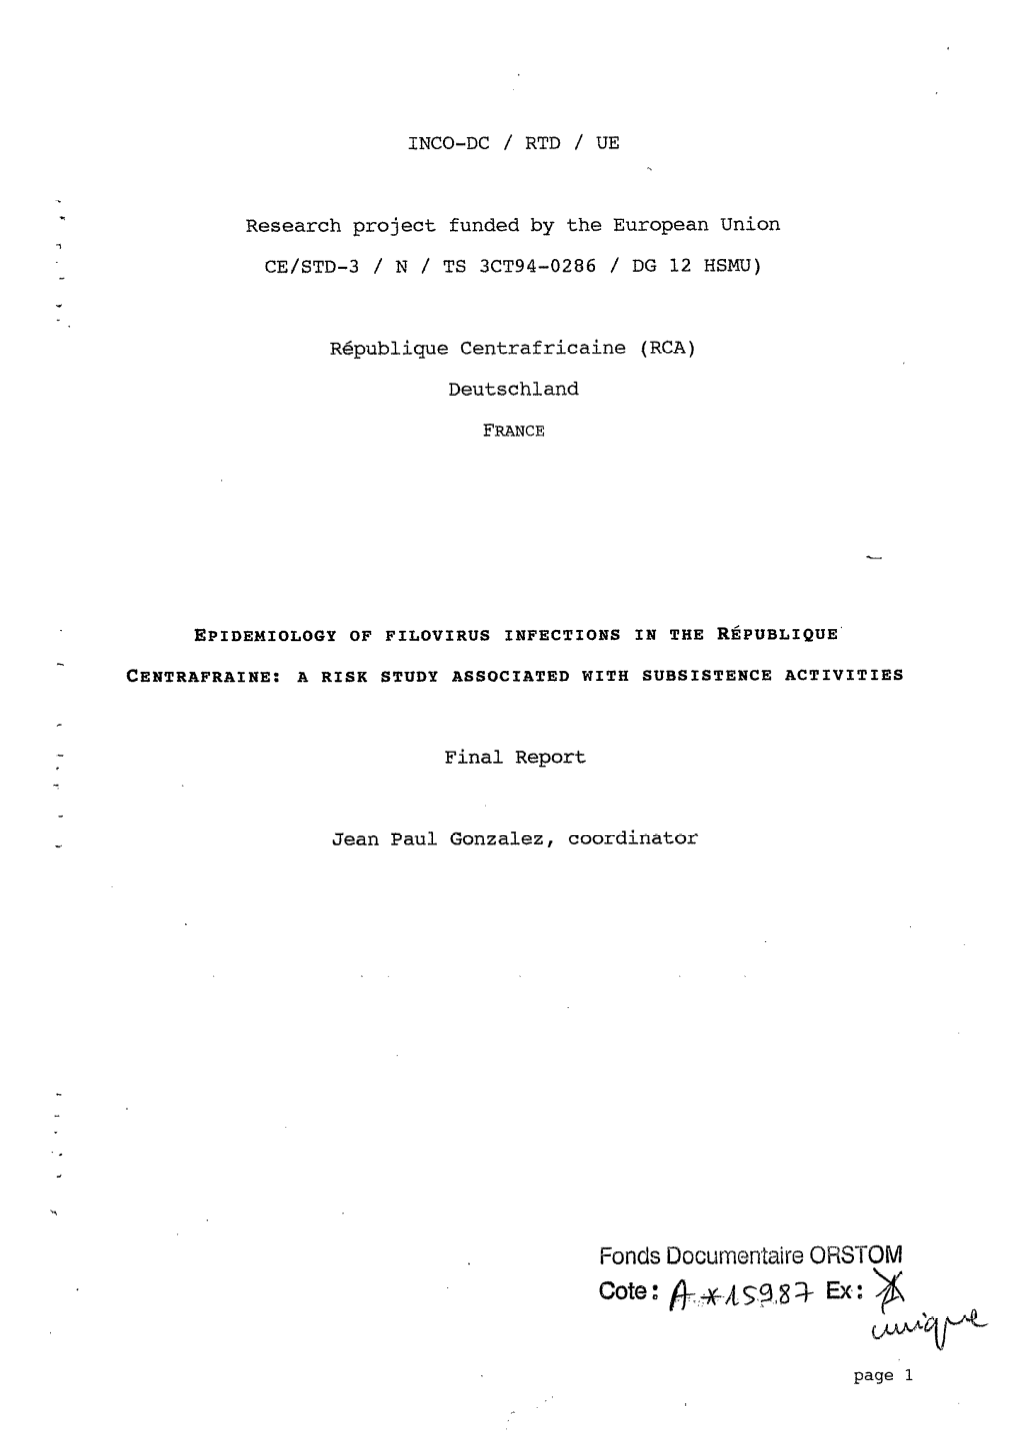 Epidemiology of Filovirus Infections in the République